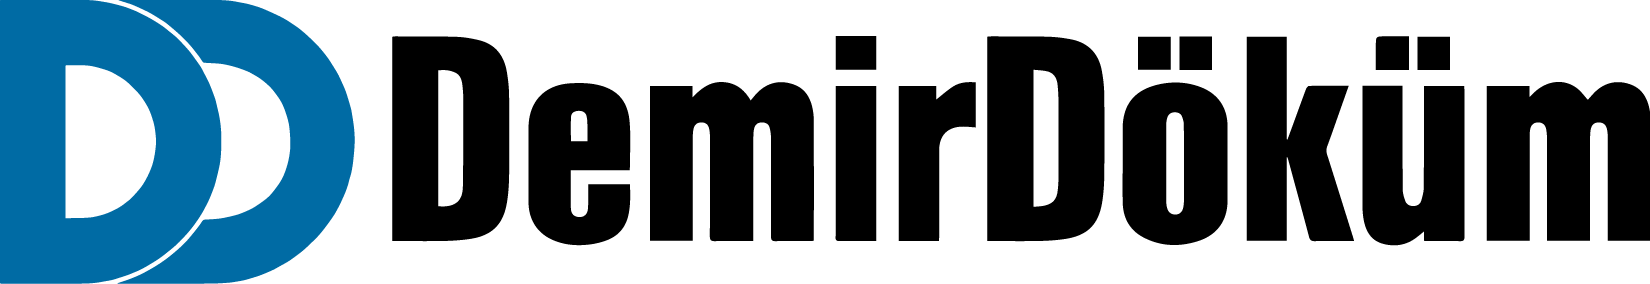 Demirdöküm Logo png